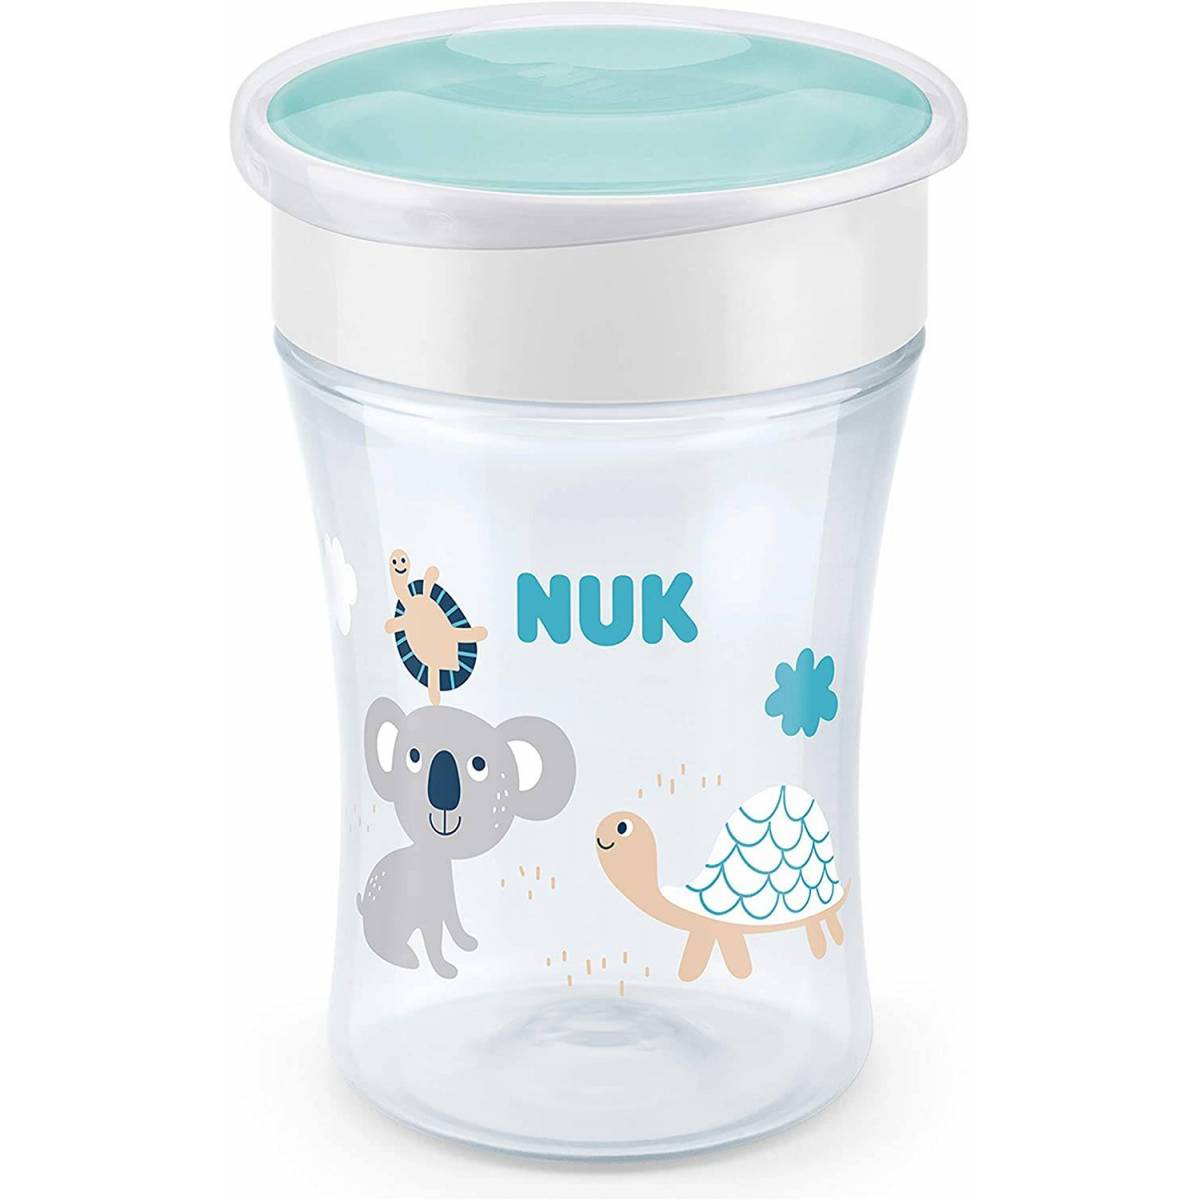 NUK Magic Cup 230 ml 8 mesi + Learner Cup Koala